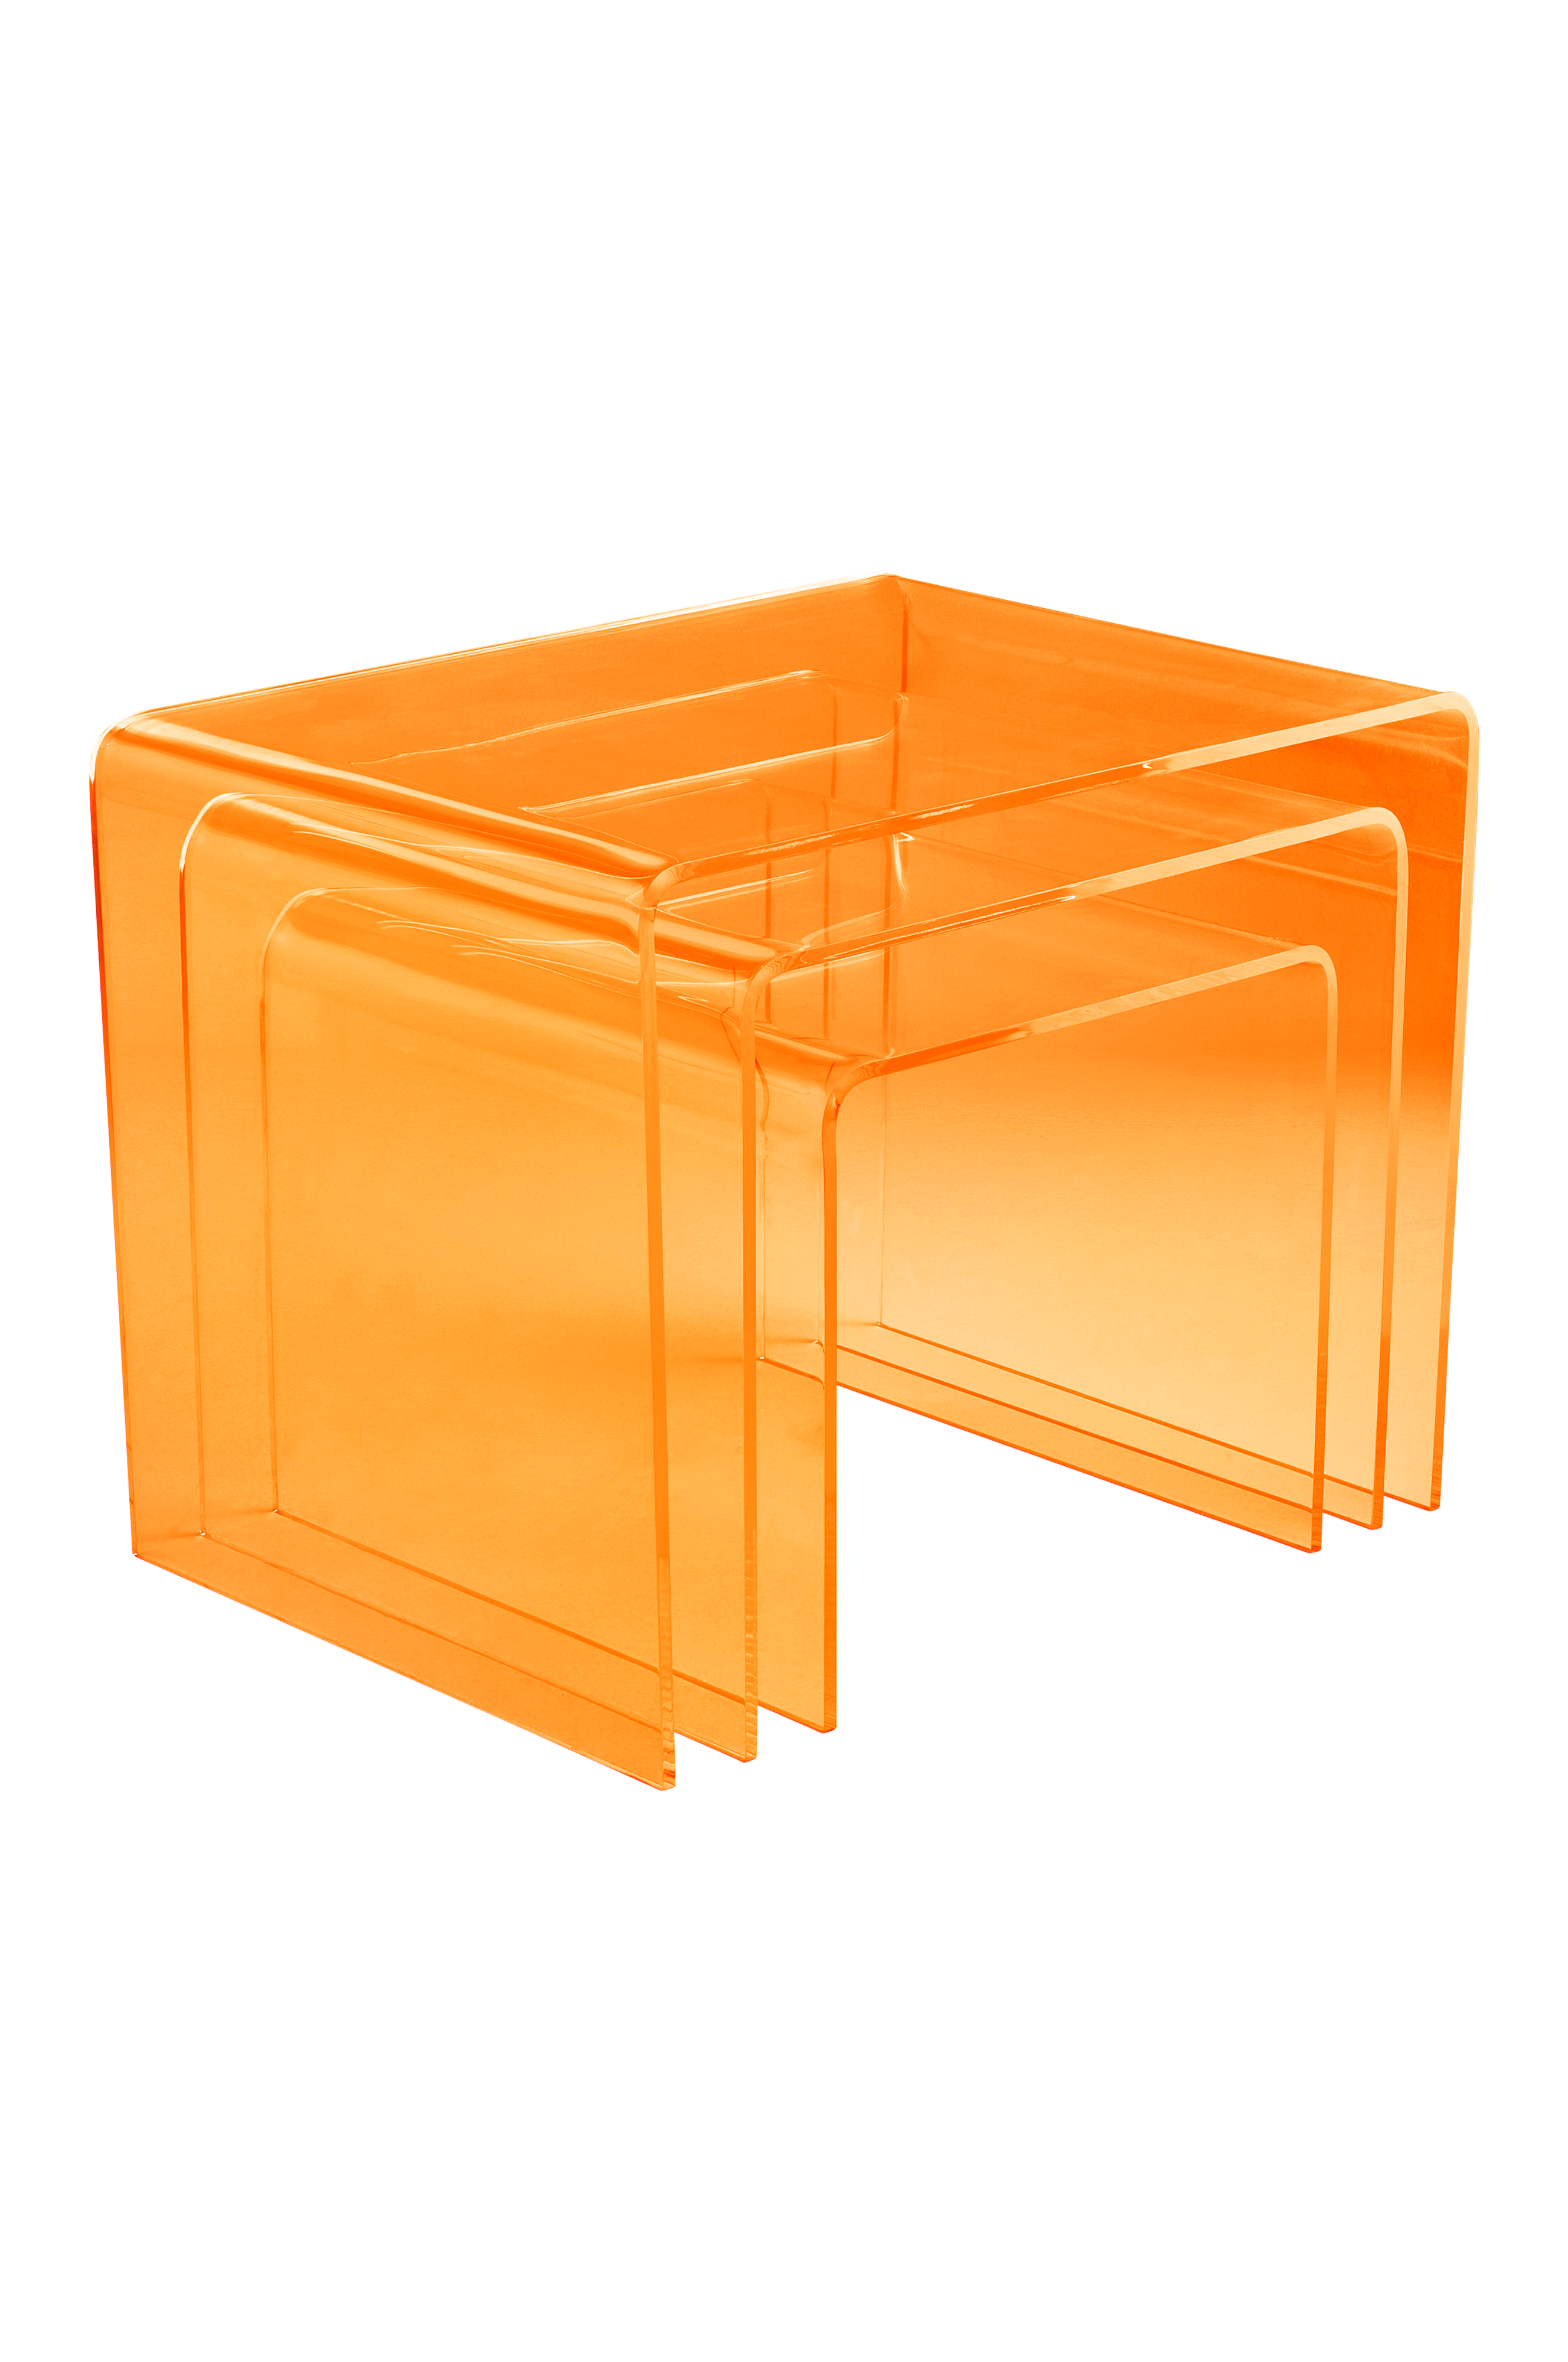 2x Plexiglas getönt Beistelltisch, Couchtisch Acryl orange-b